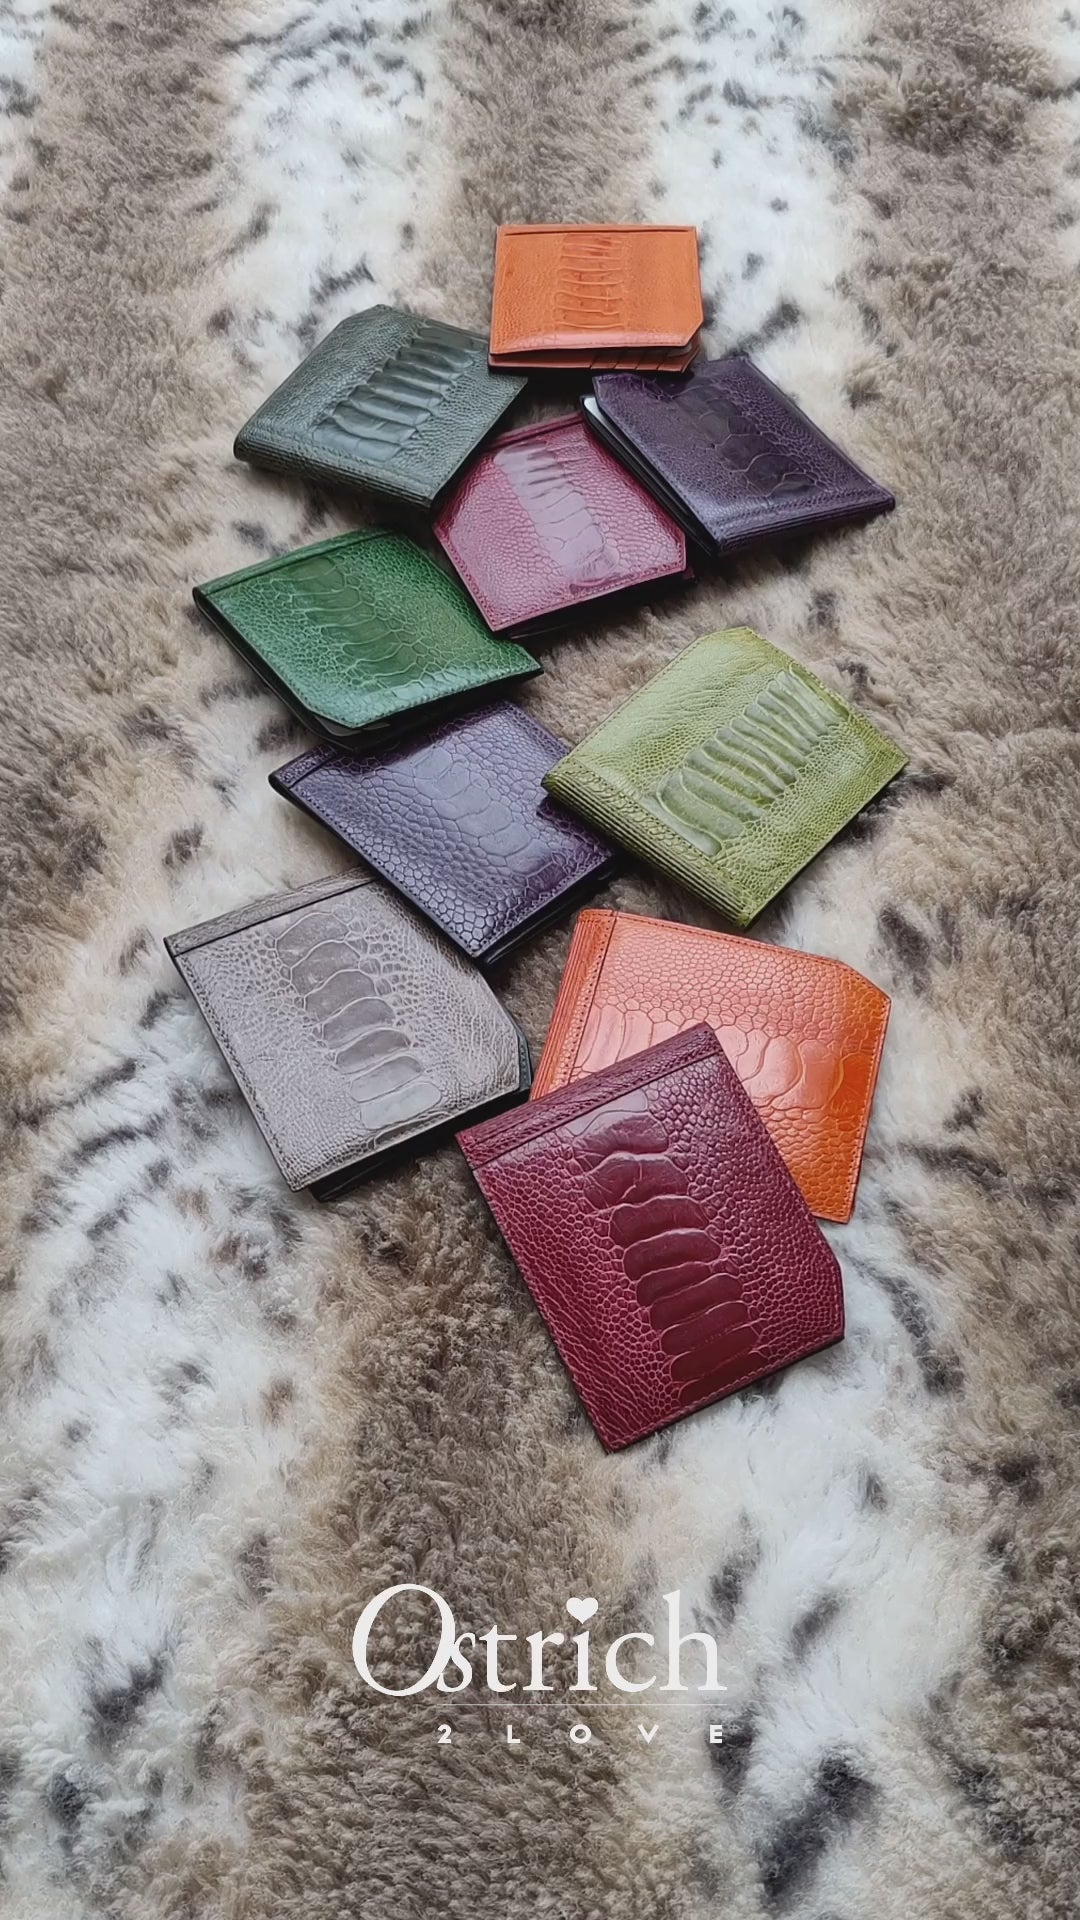 Santa Fe Ostrich Shin Leather Billfold Wallet